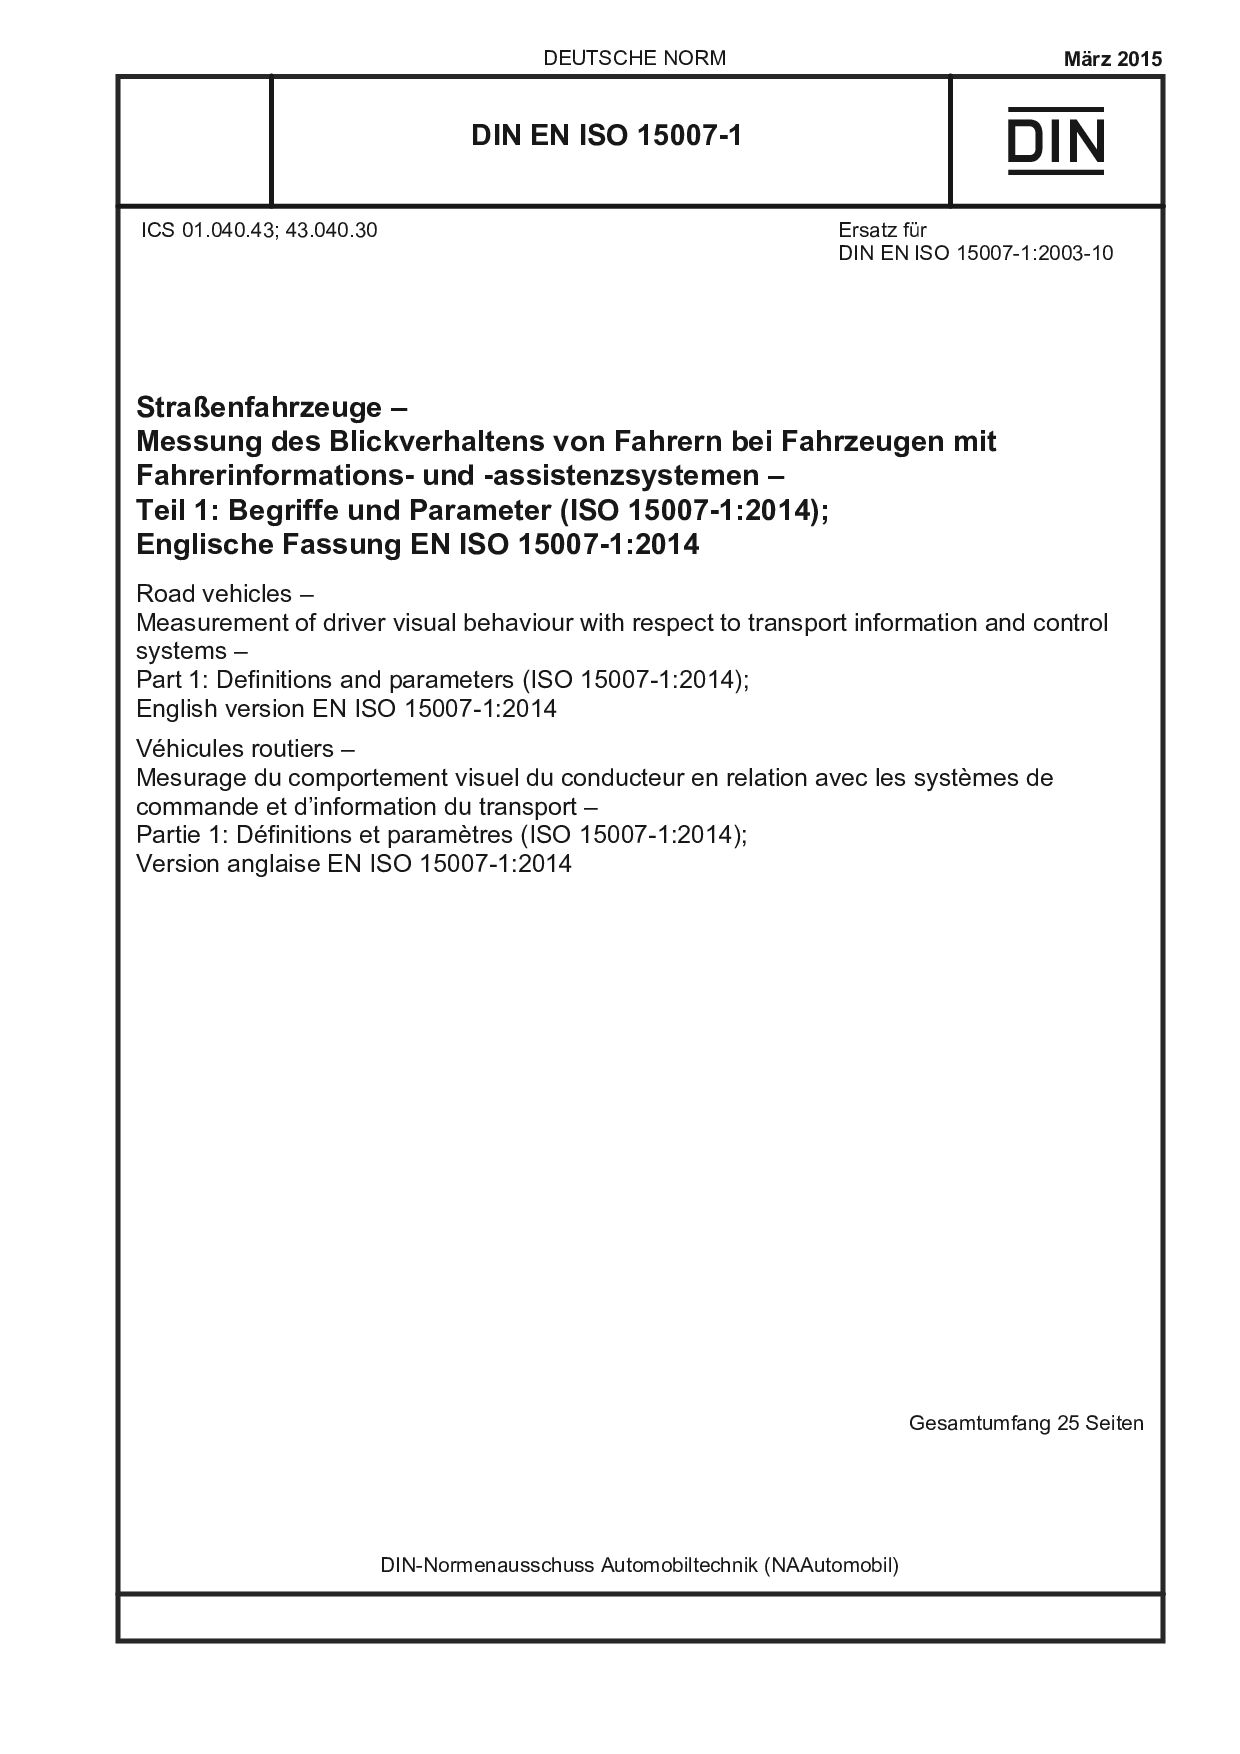 DIN EN ISO 15007-1:2015封面图